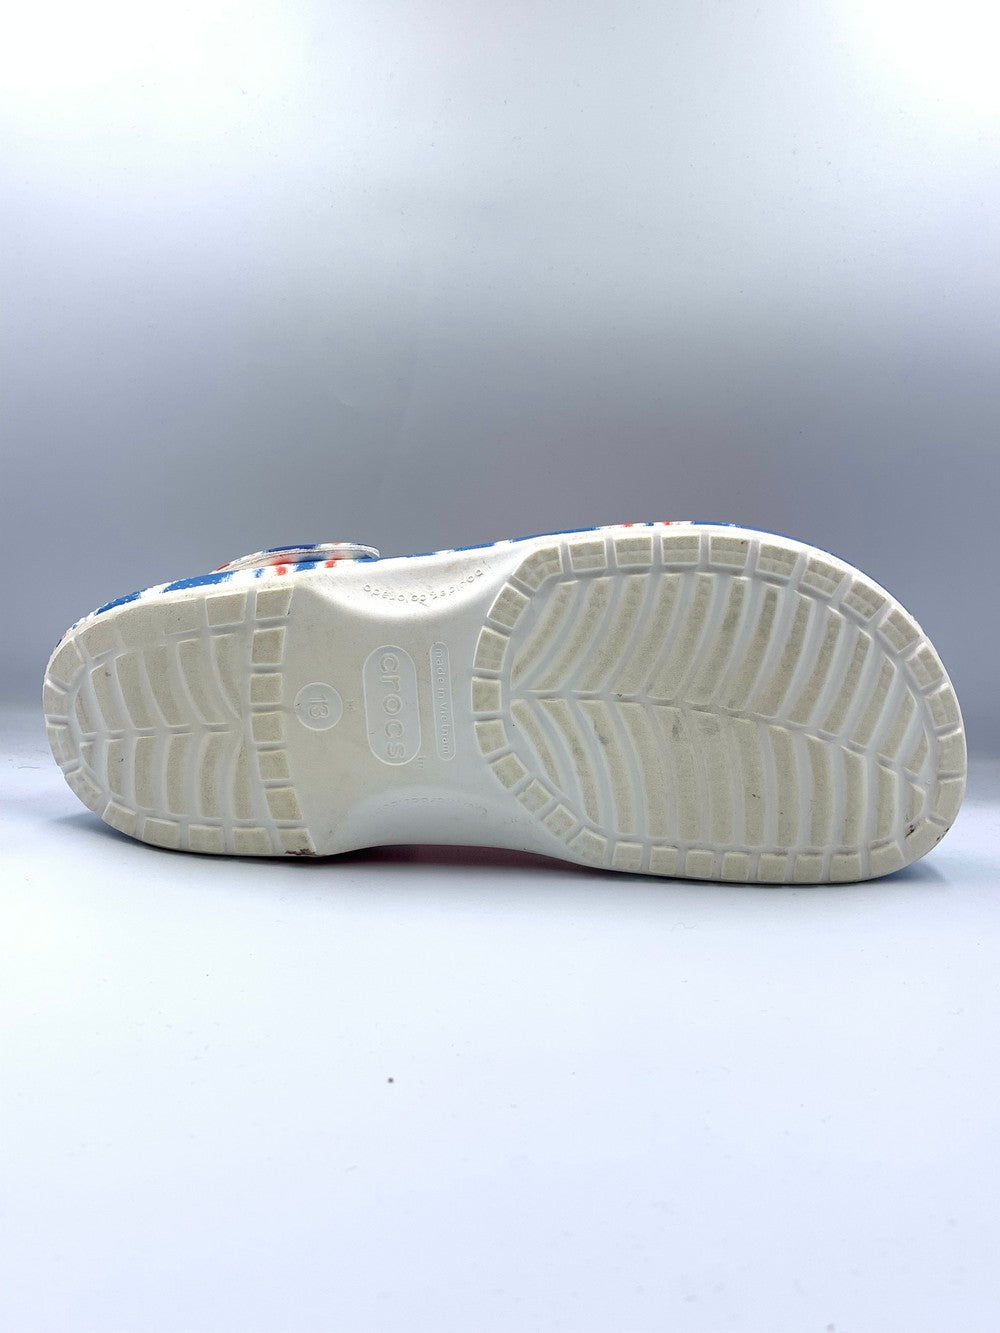 Crocs Original Brand Slipper For Men